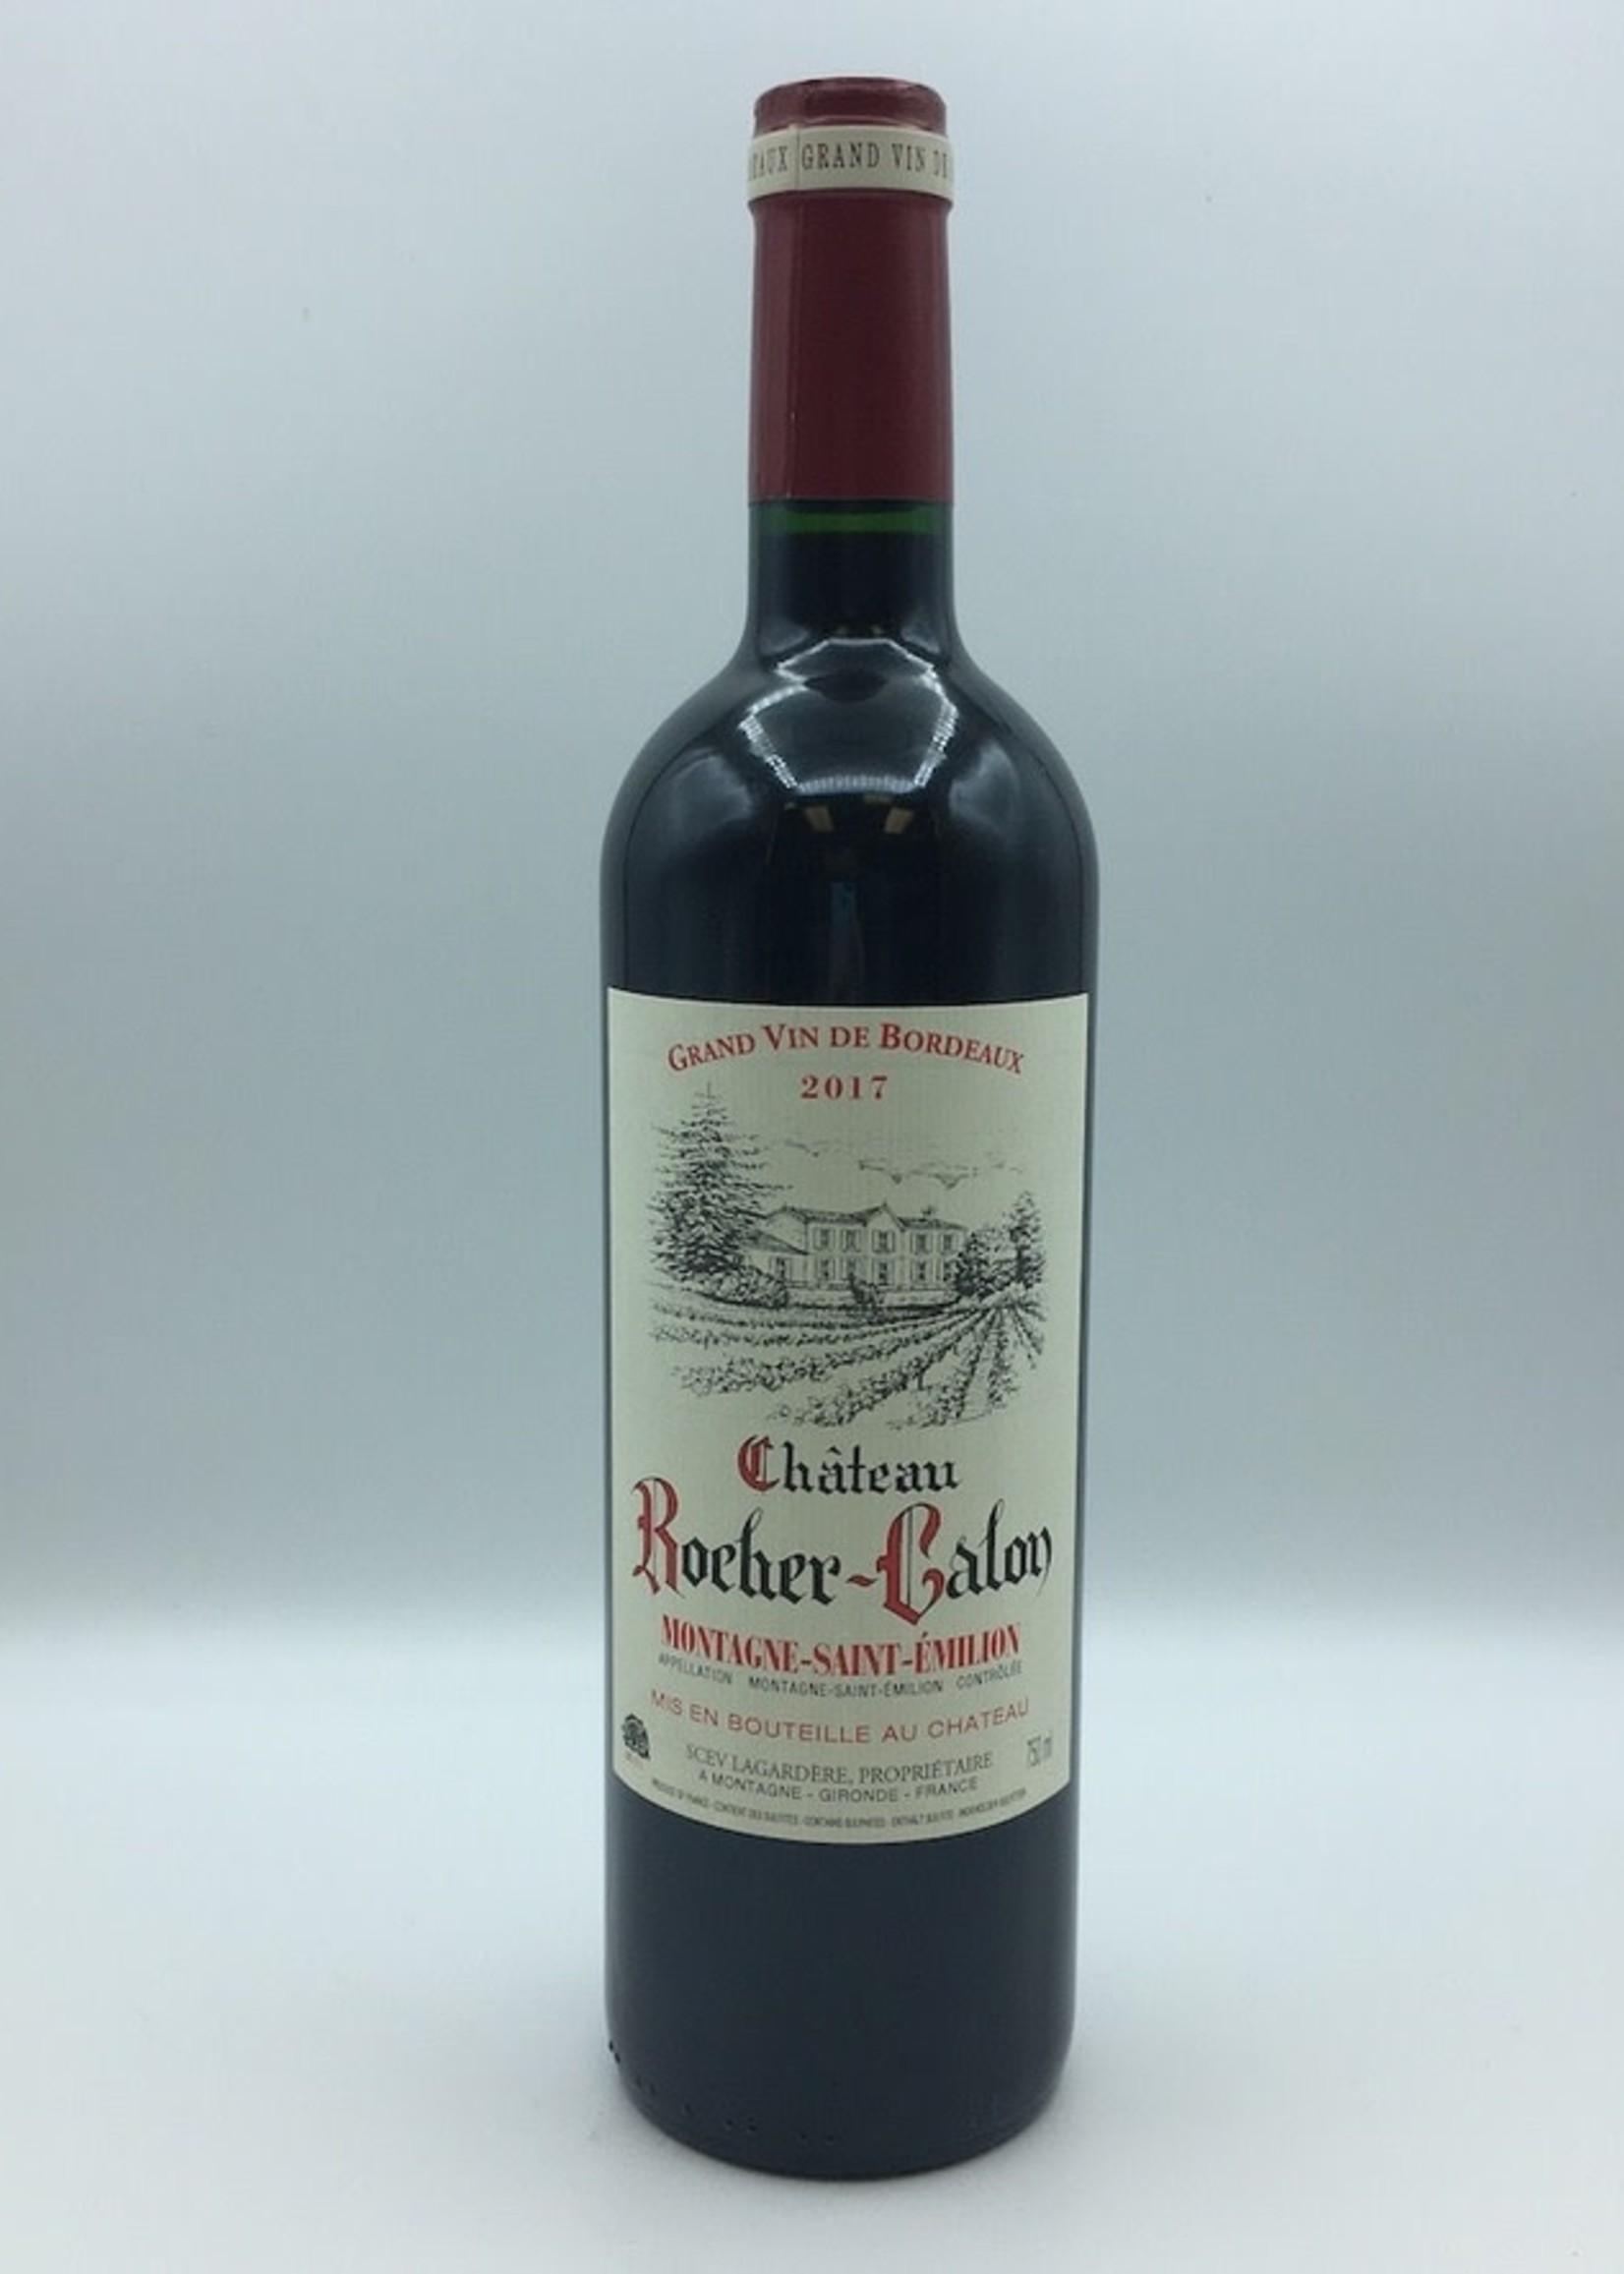 Chateau Rocher-Calon Saint Emilion Grand Vin de Bordeaux 750ML V